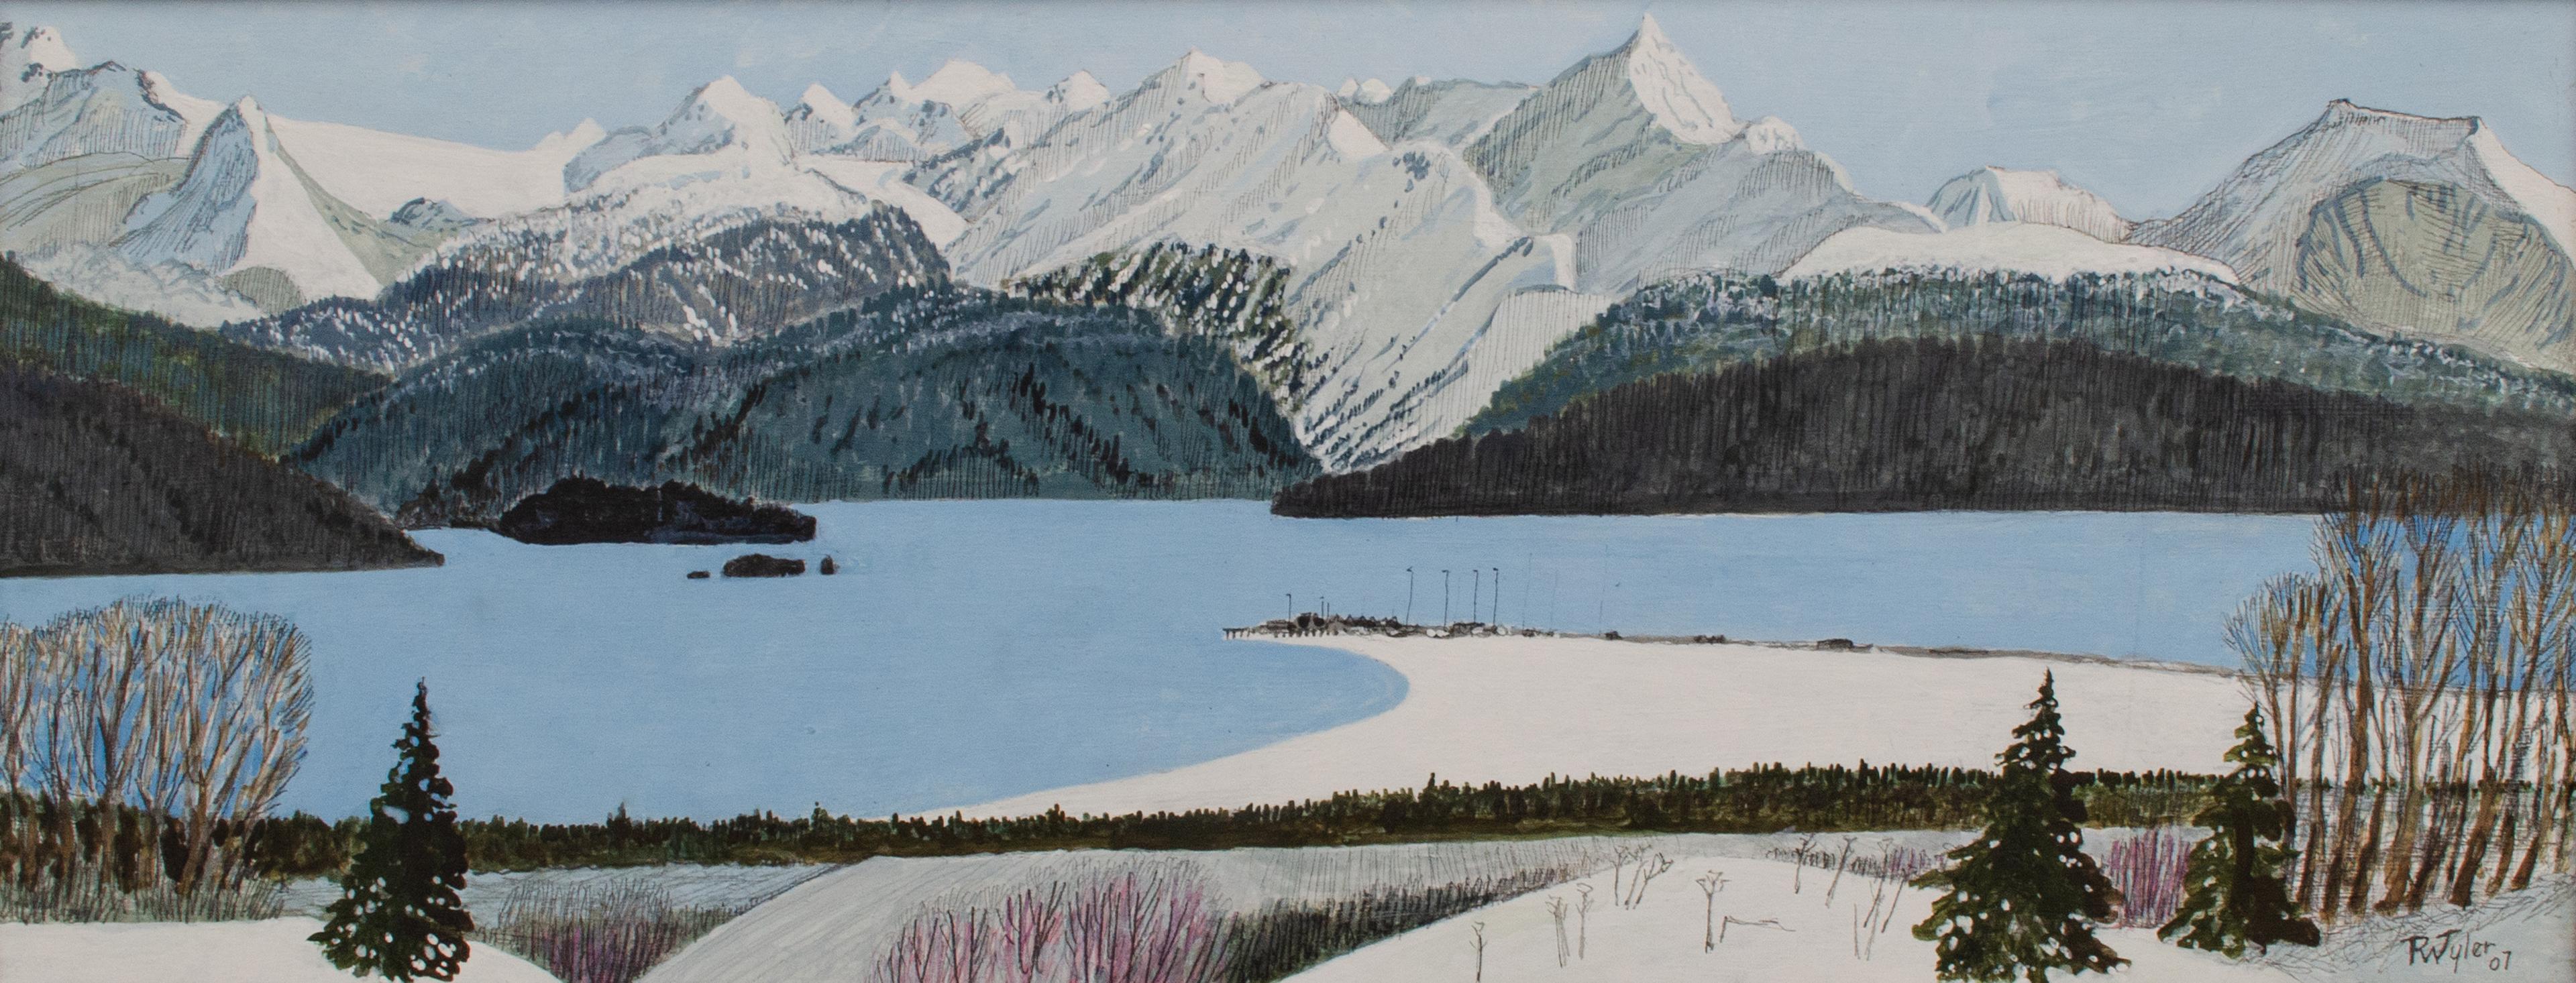 Kachemak Bay, Alaskan Landscape by R.W. 